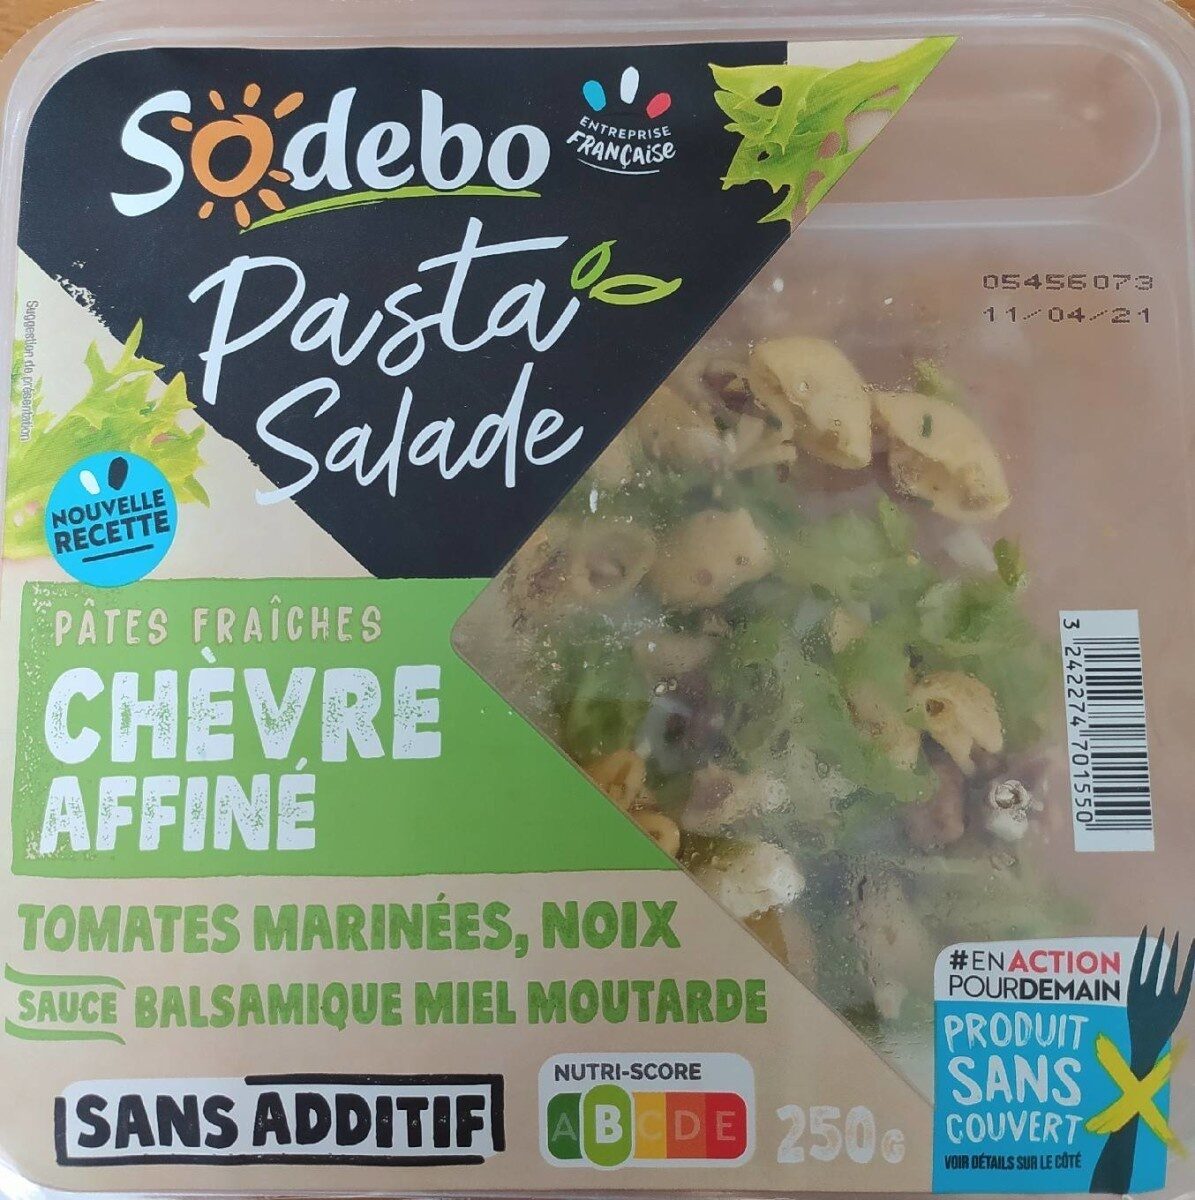 Salade pâtes fraîche chèvre affiné - Product - fr